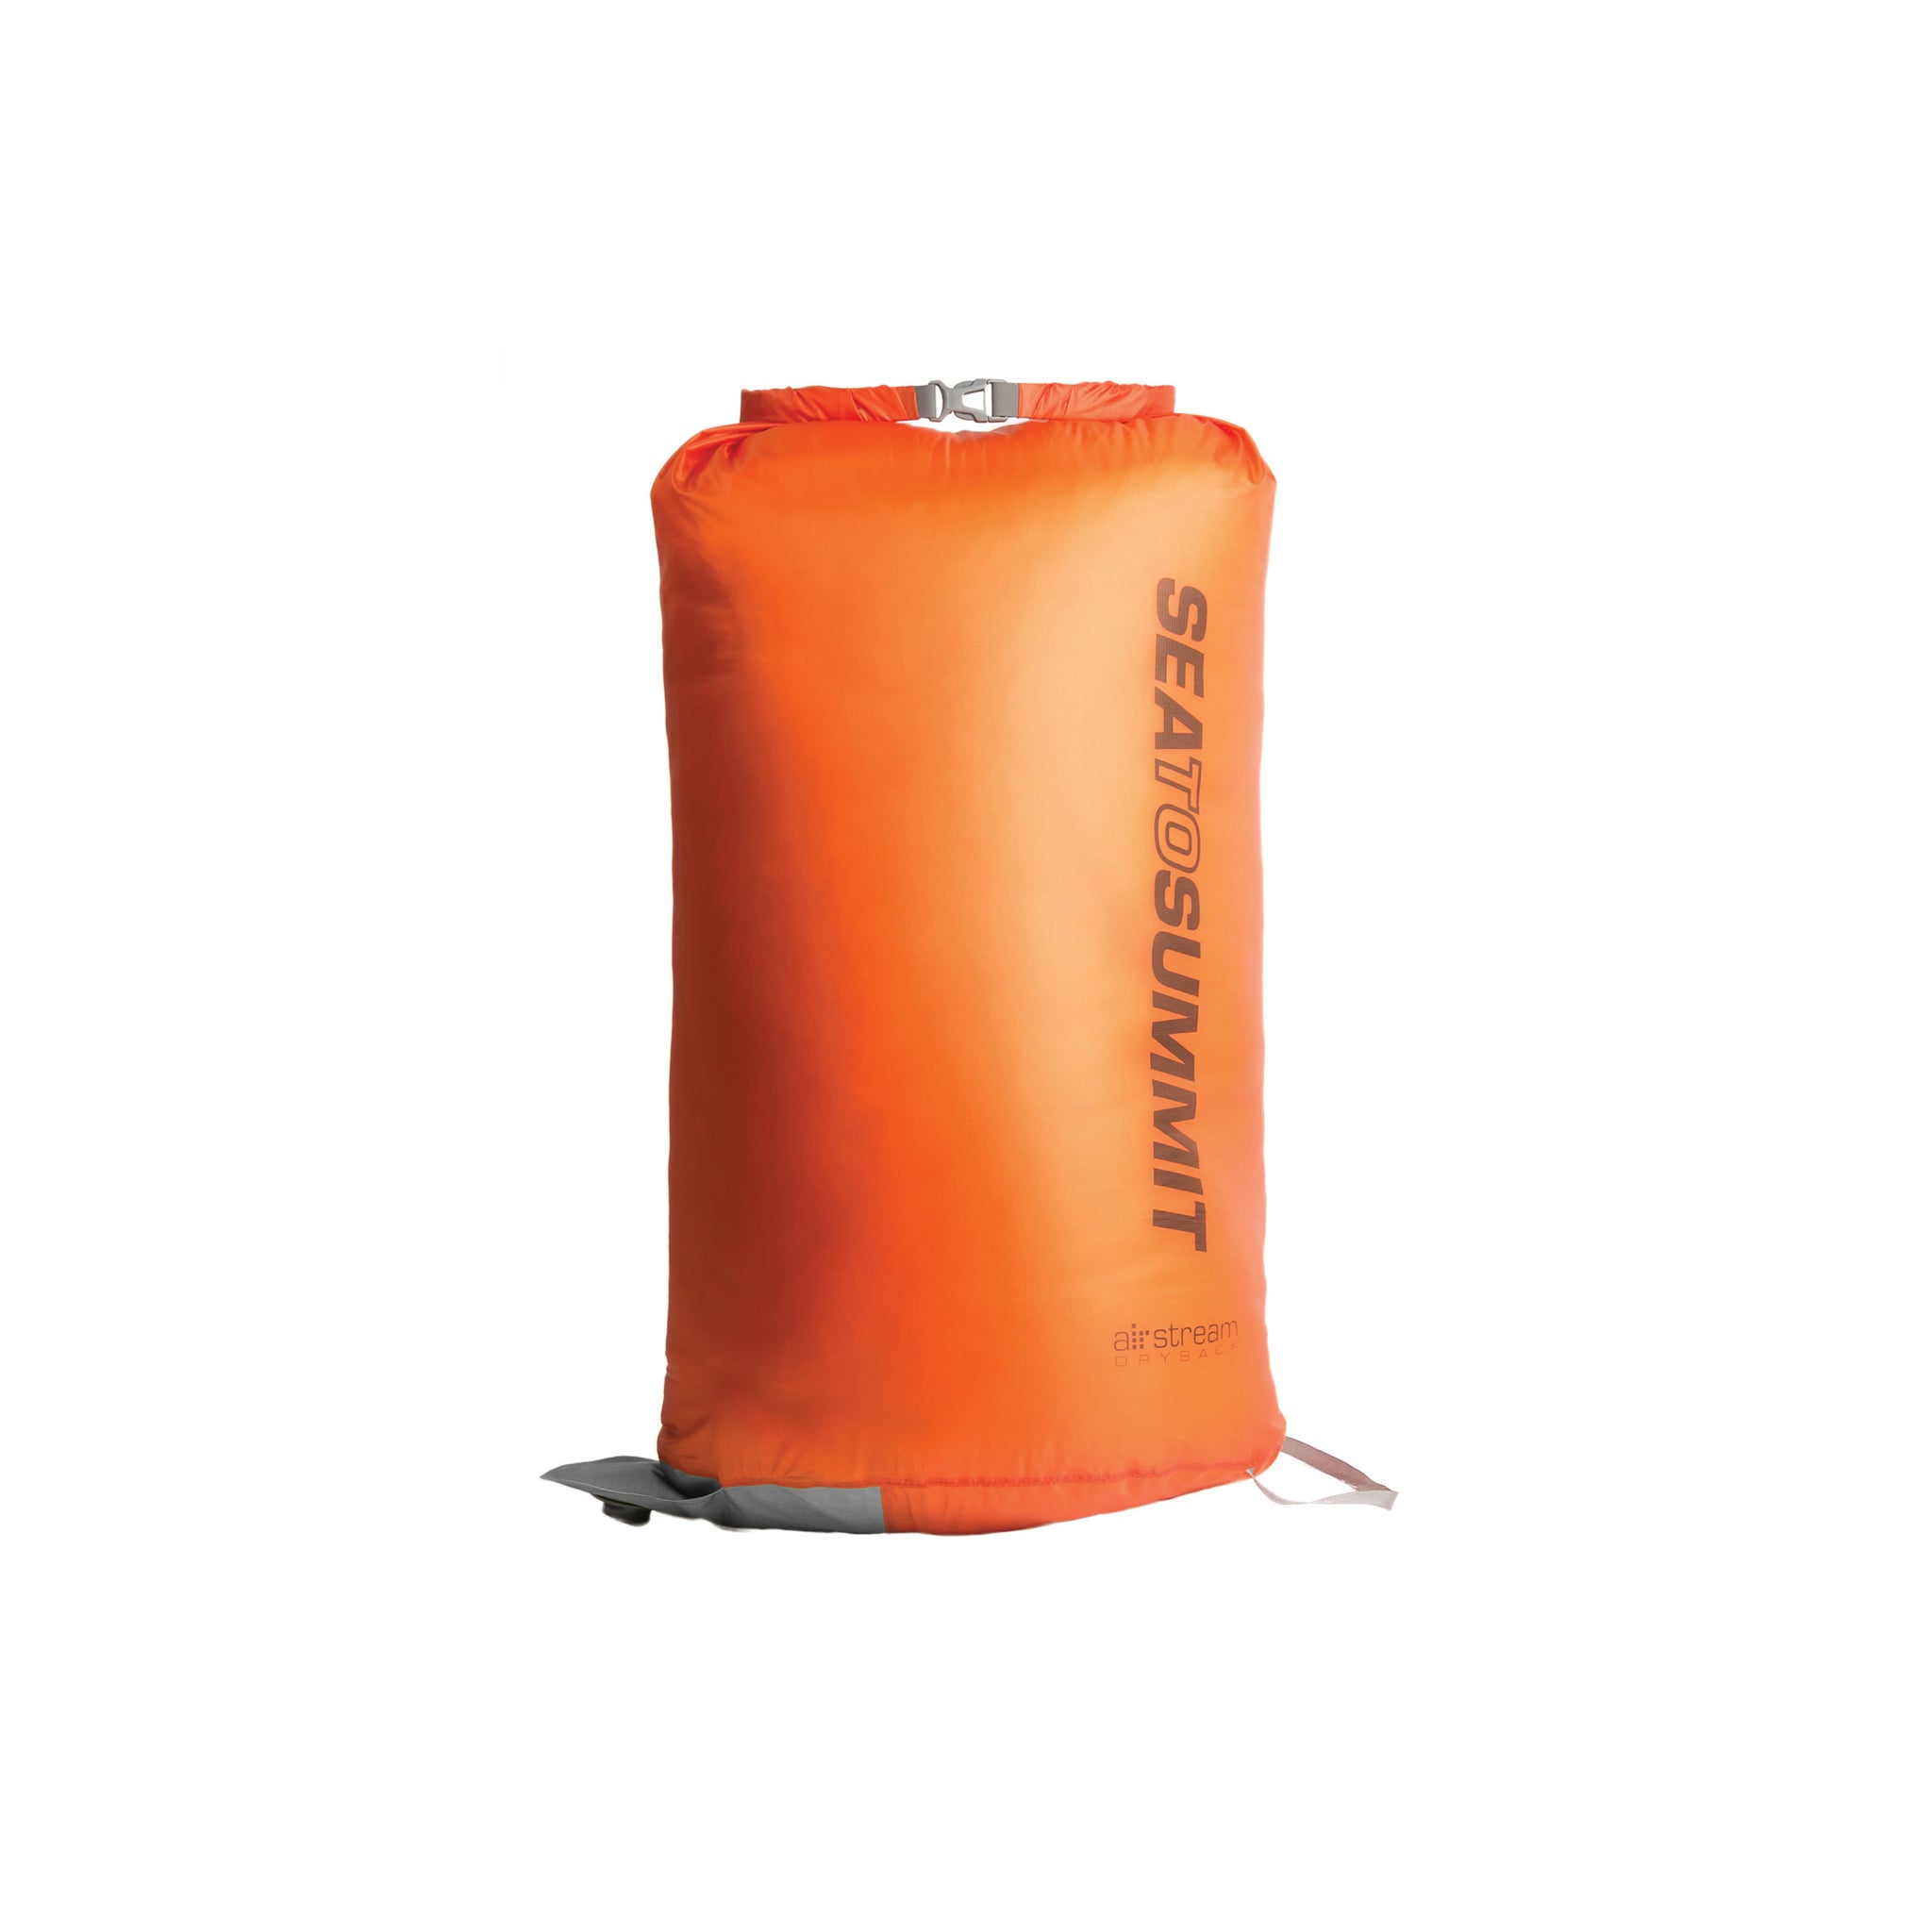 Sea to Summit Lightweight Compression Sack, 5 Liter / Spicy Orange